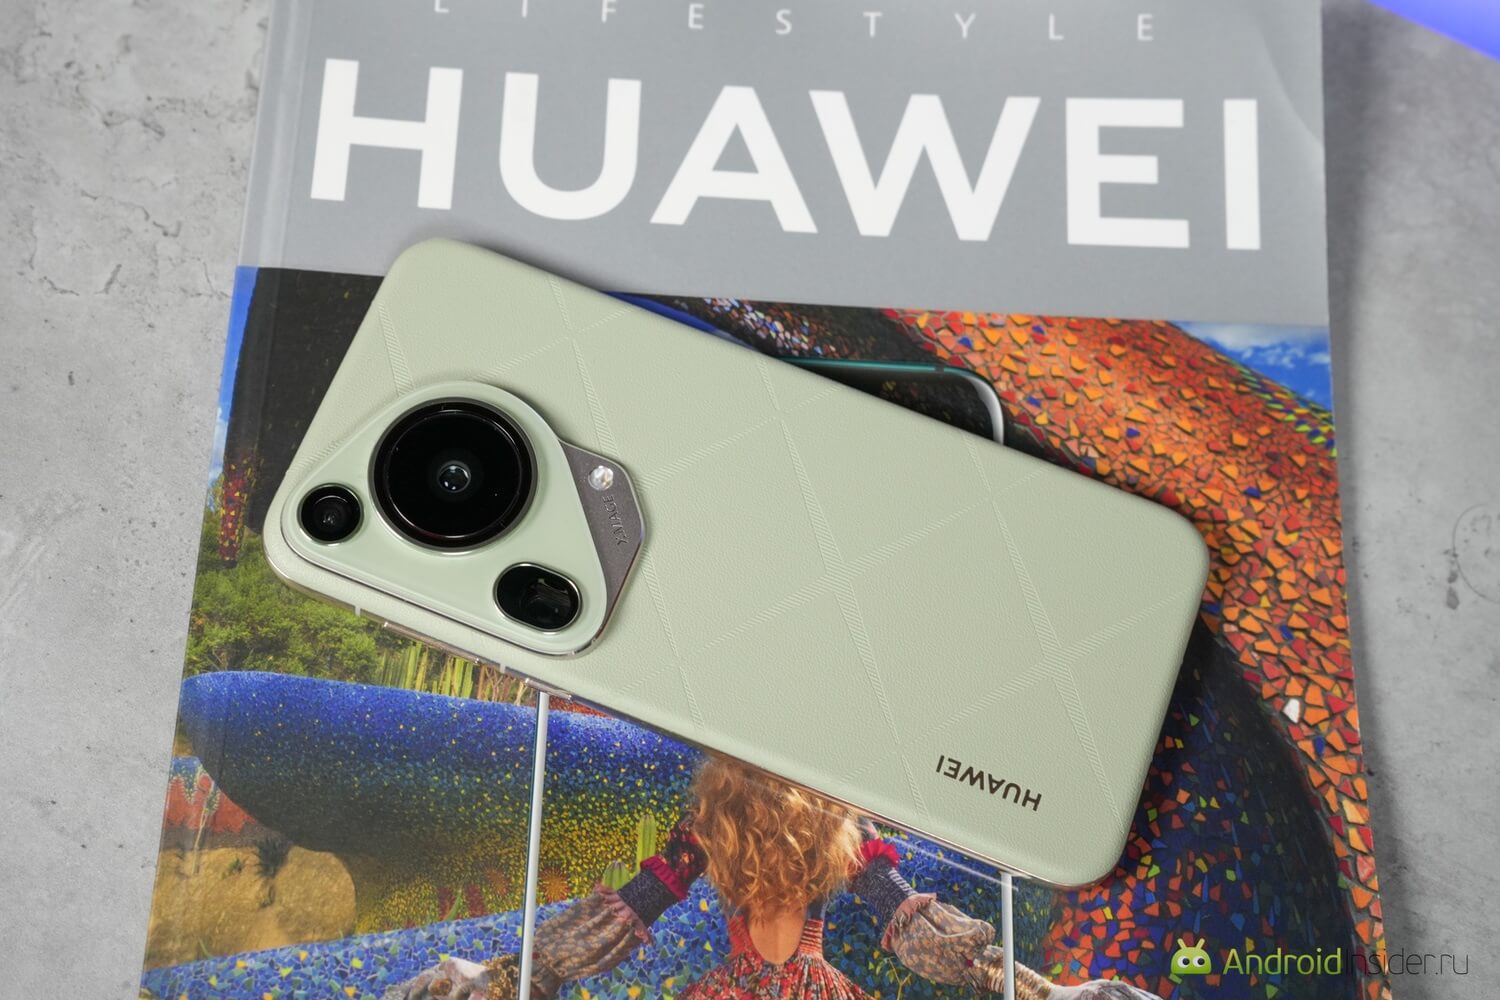 Китайский телефон с самой хорошей камерой. Обзор HUAWEI Pura 70 Ultra. Этот смартфон вызвал немало споров, но он точно заслуживает внимания. Фото.